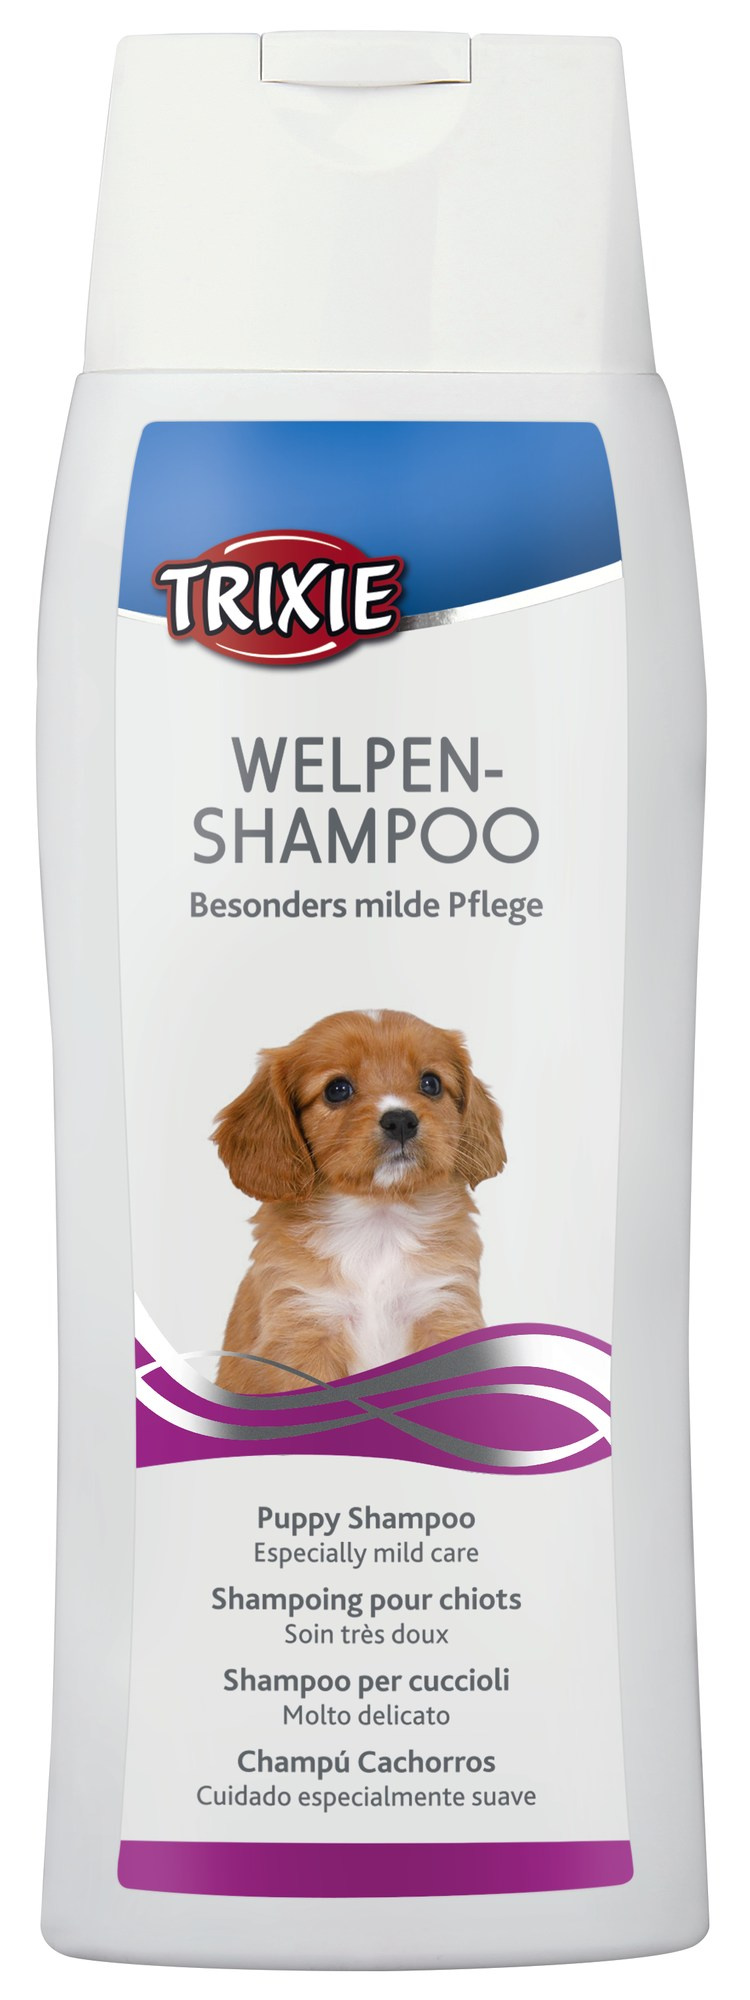 Welpen-Shampoo